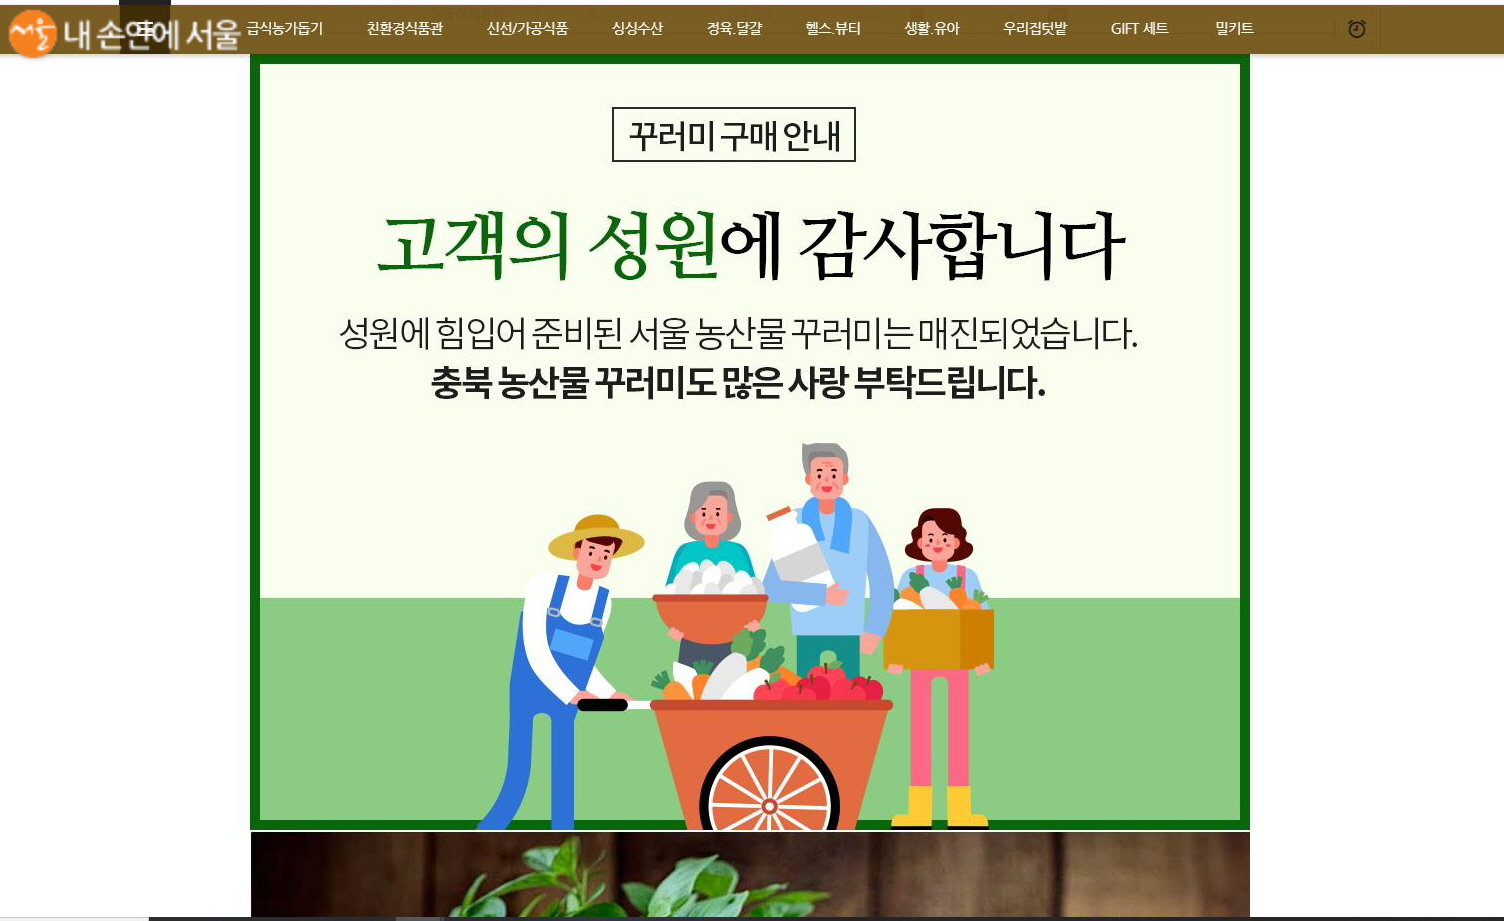 순식간에 품절된 서울시 친환경농산물 꾸러미 홈페이지에는 충북 농산물 꾸러미 판매를 부탁하는 인사가 올라와 있다